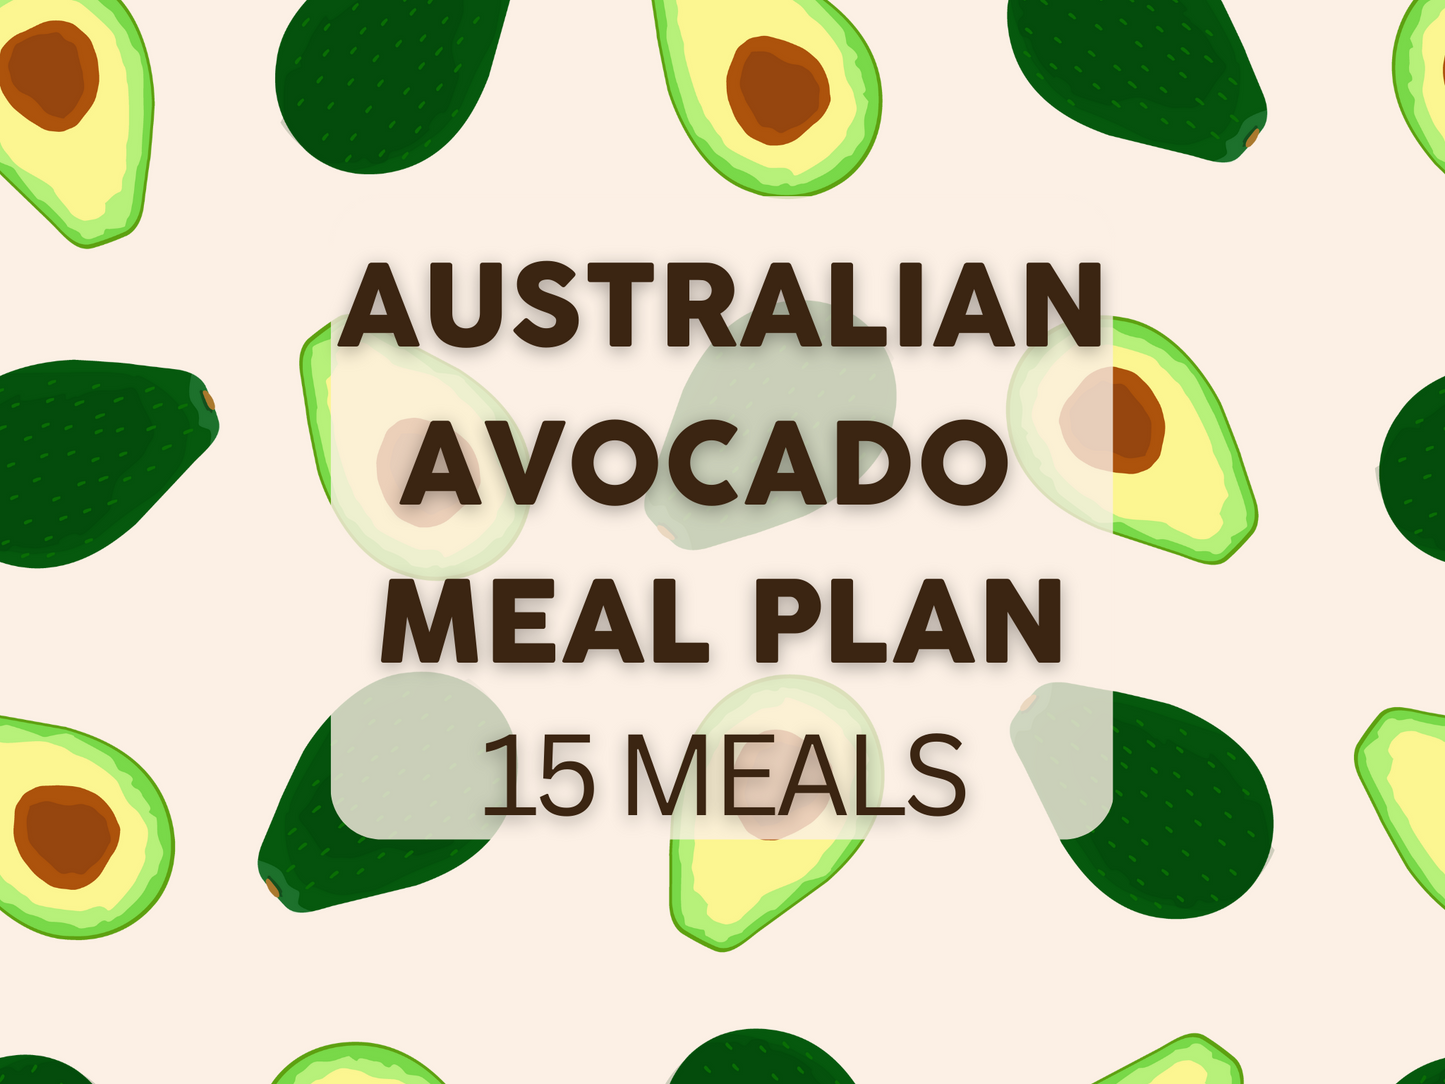 Australian Avocado Meal Plan (15 Meals)